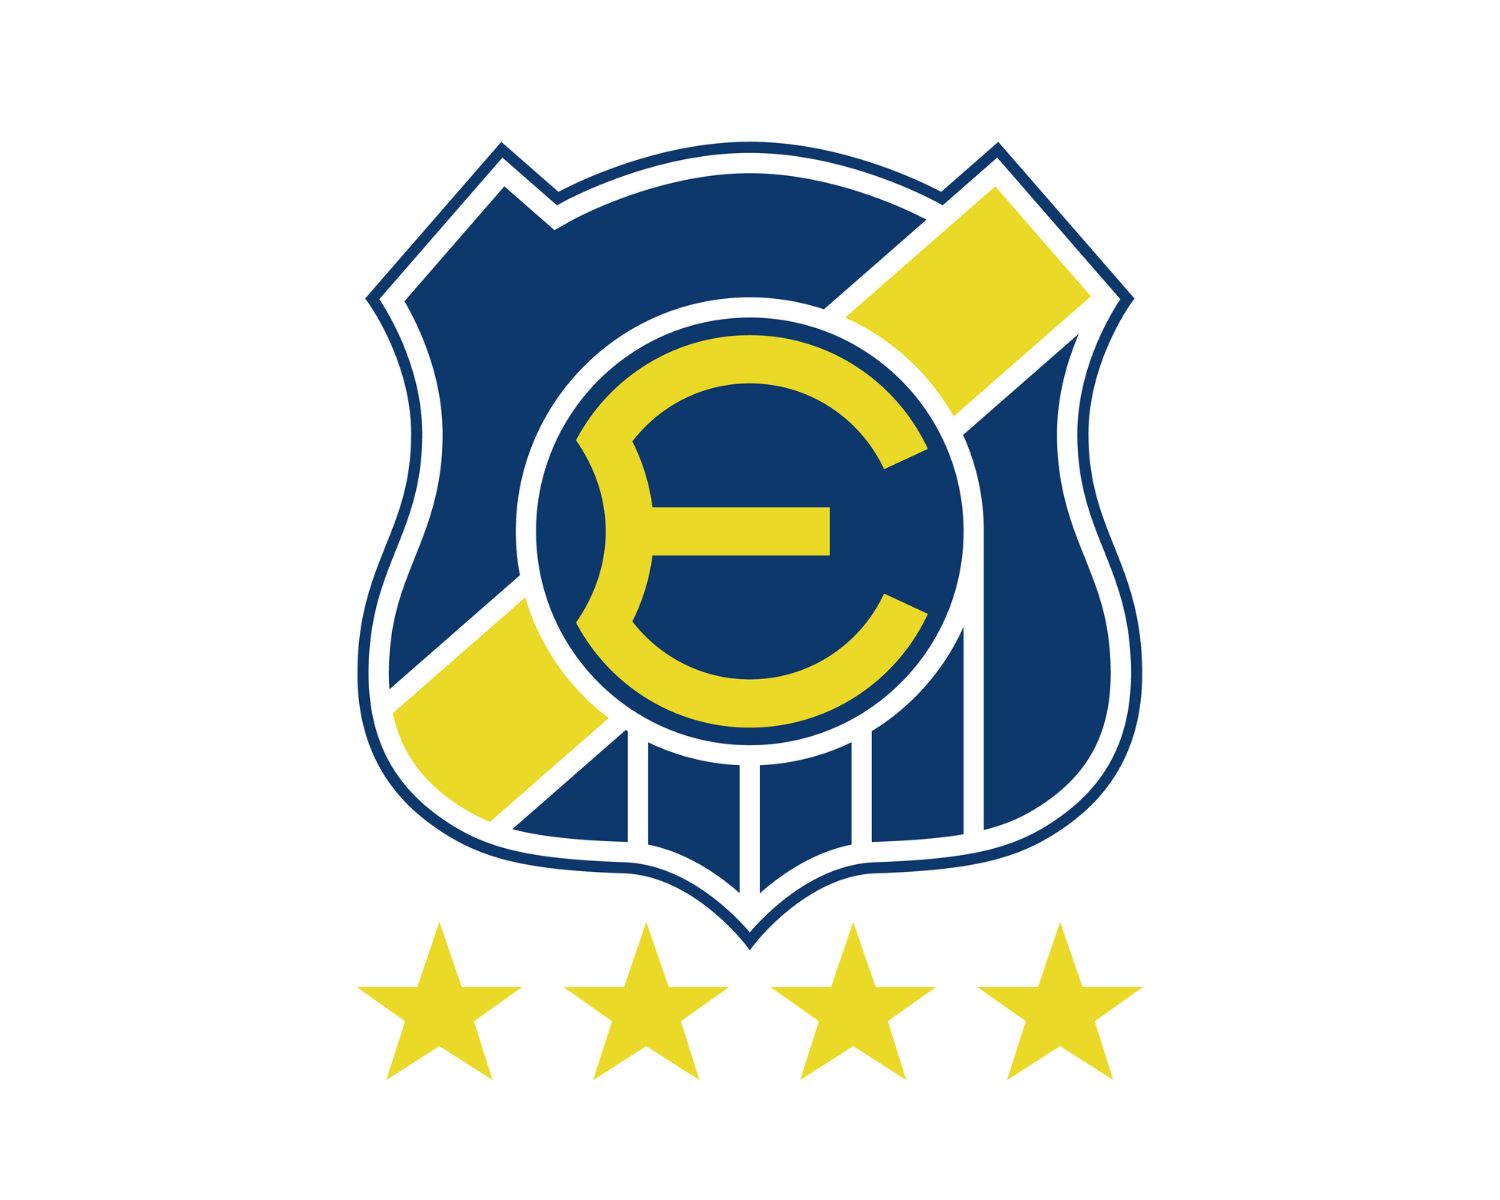 everton-de-vina-del-mar-13-football-club-facts